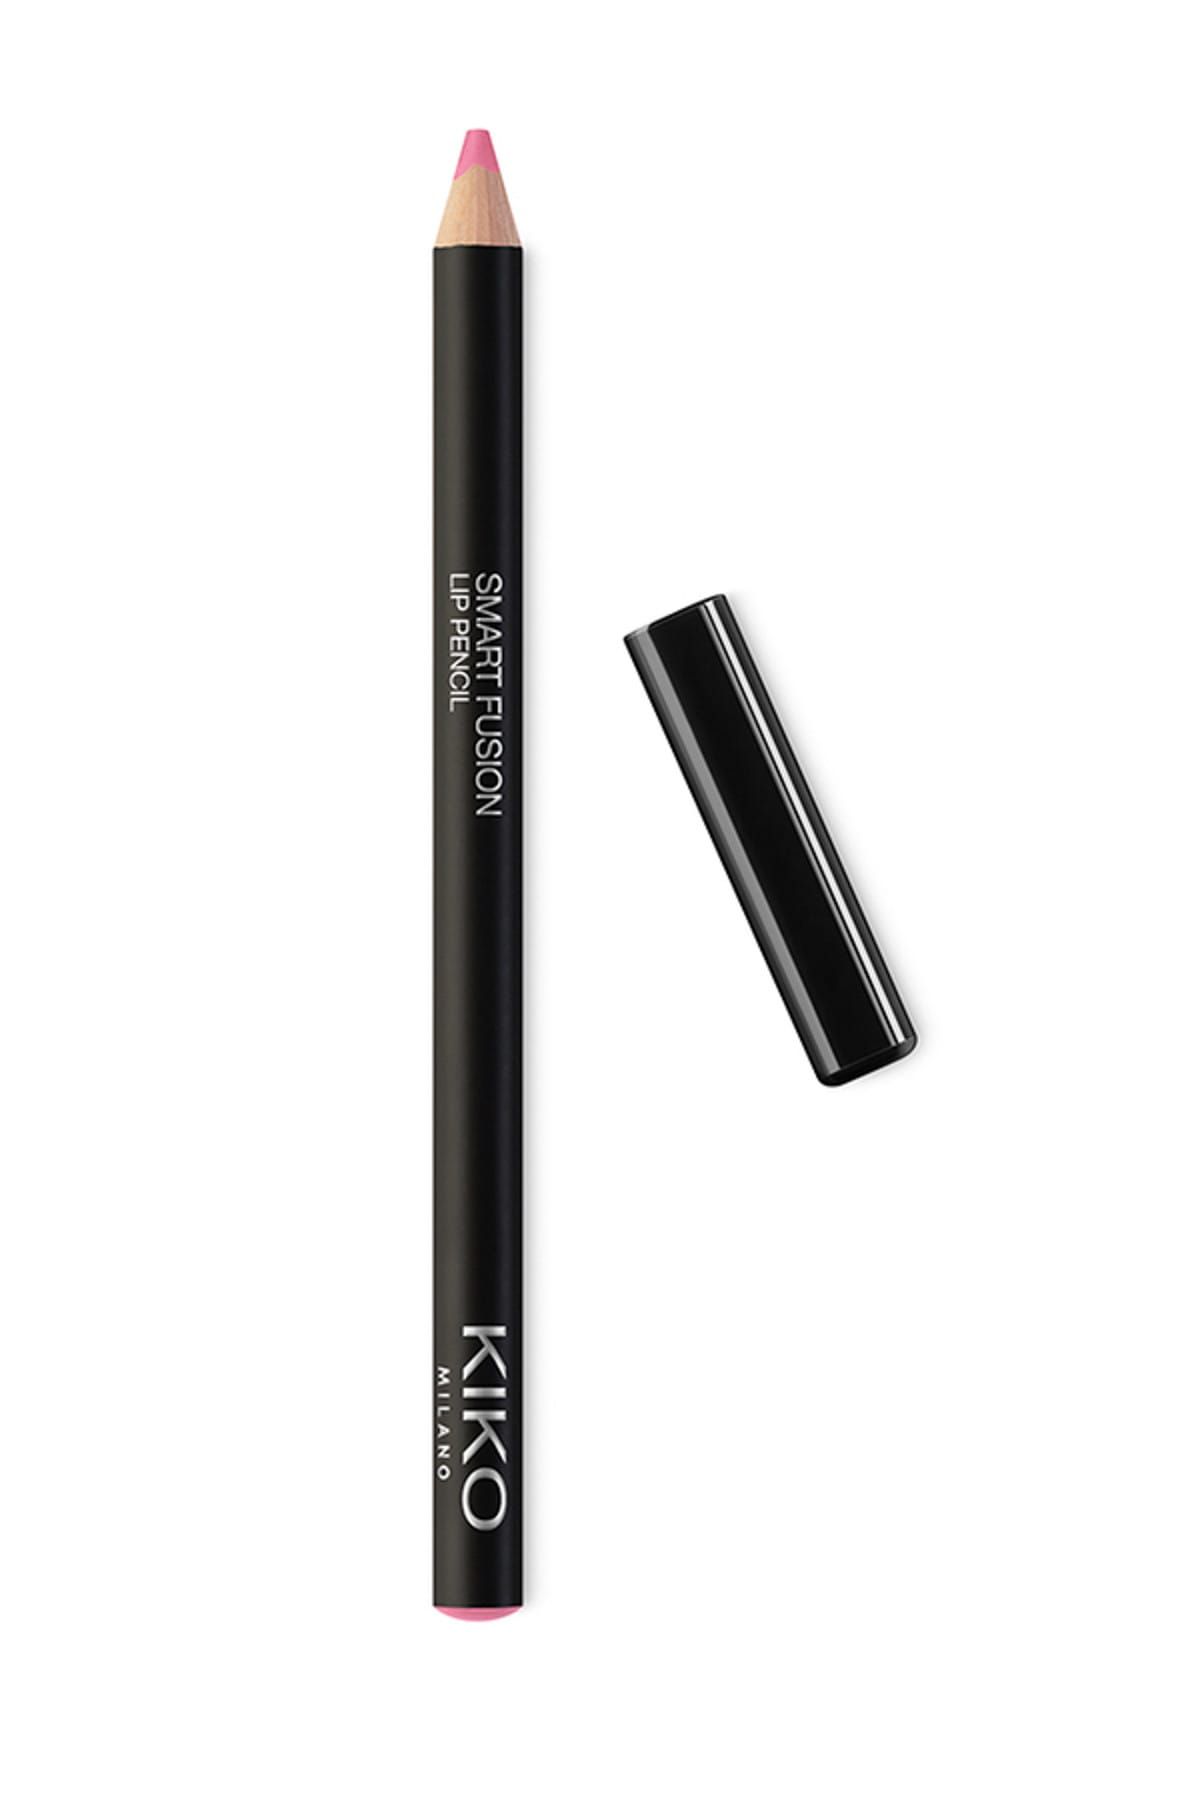 KIKO مداد لب Smart Fusion بافت نرم و روان شماره ۵۲۰ رنگ رز روشن